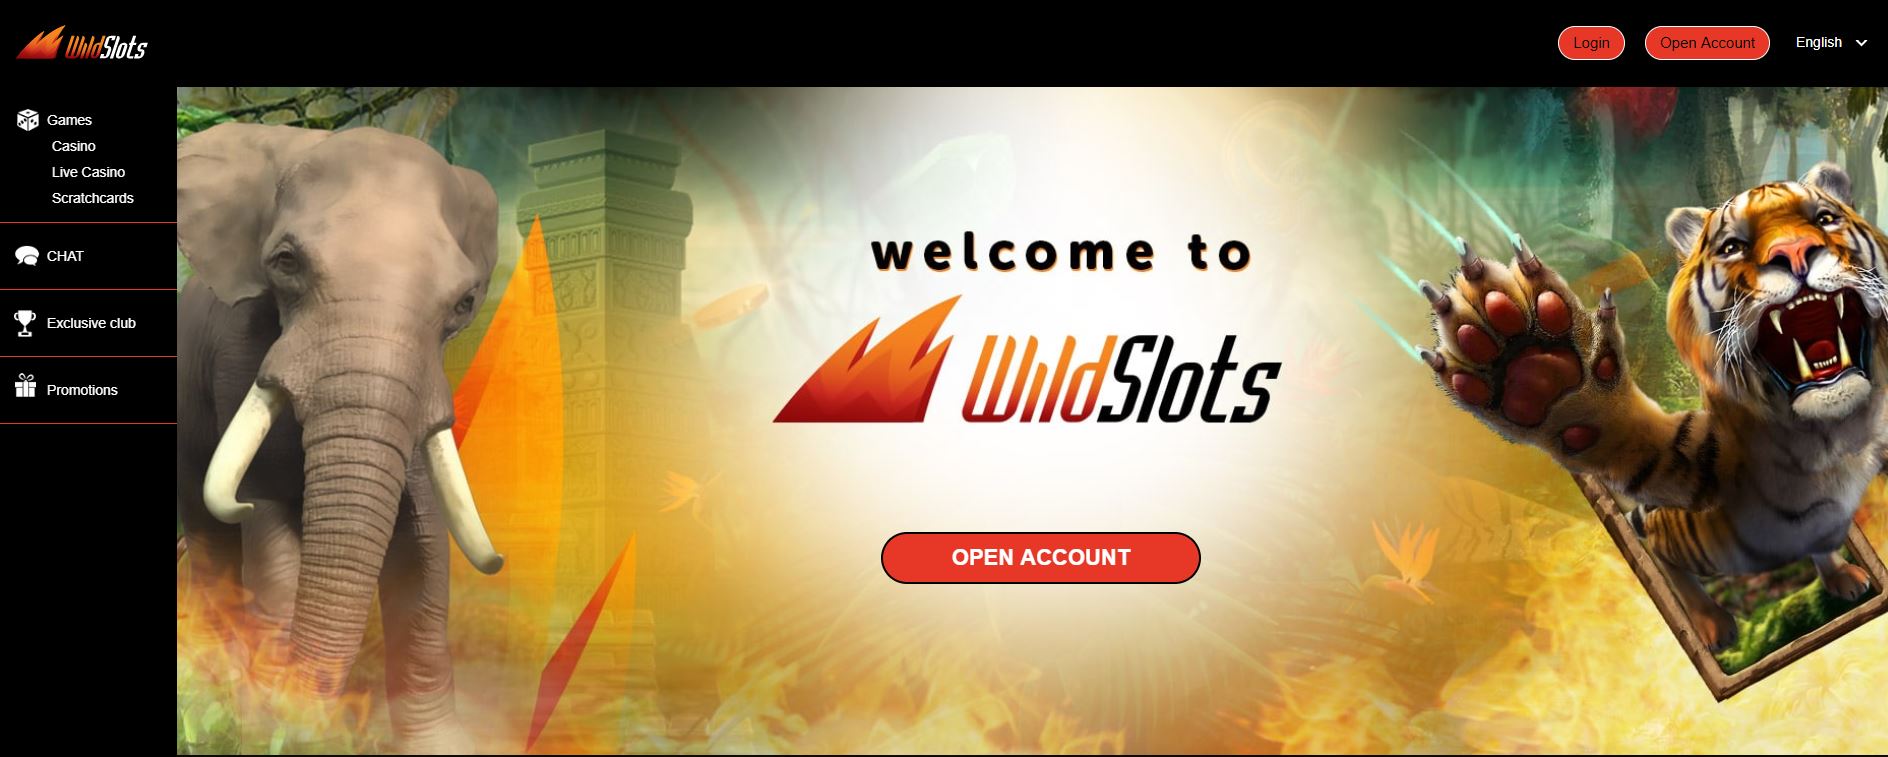 Internationellt top casino Wildslots veckans